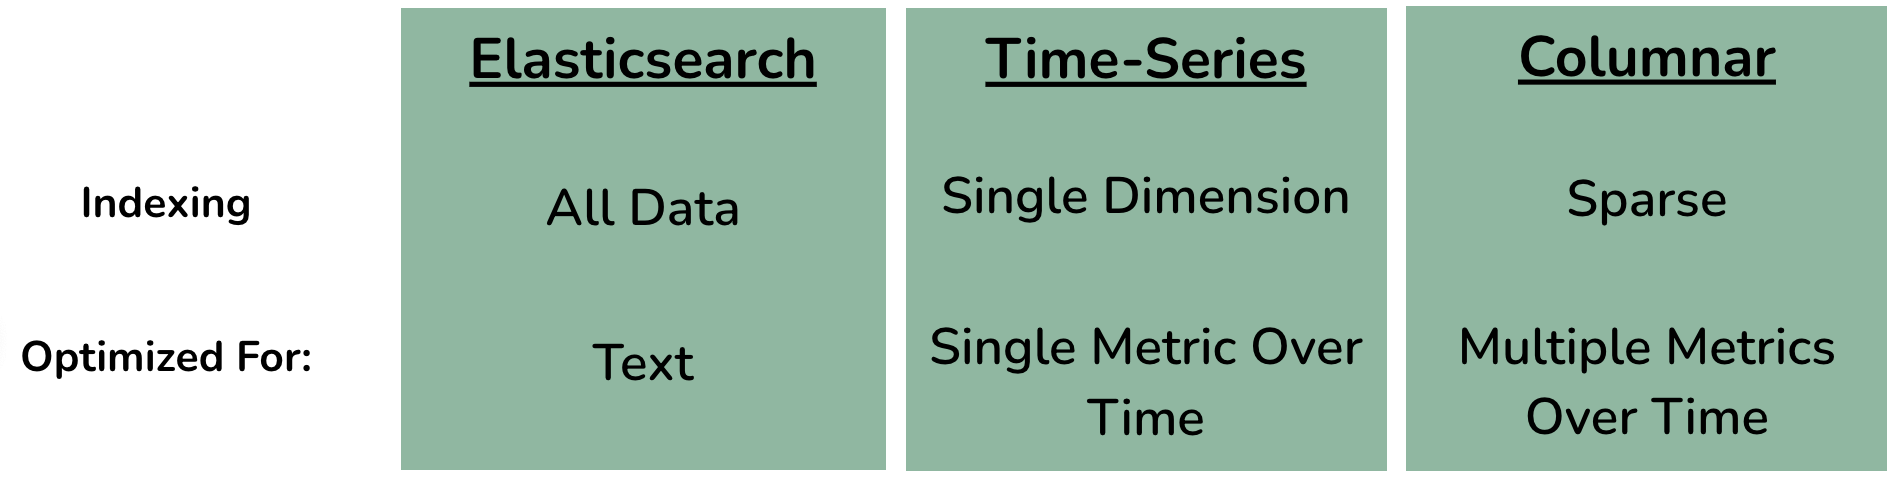 Database table comparison